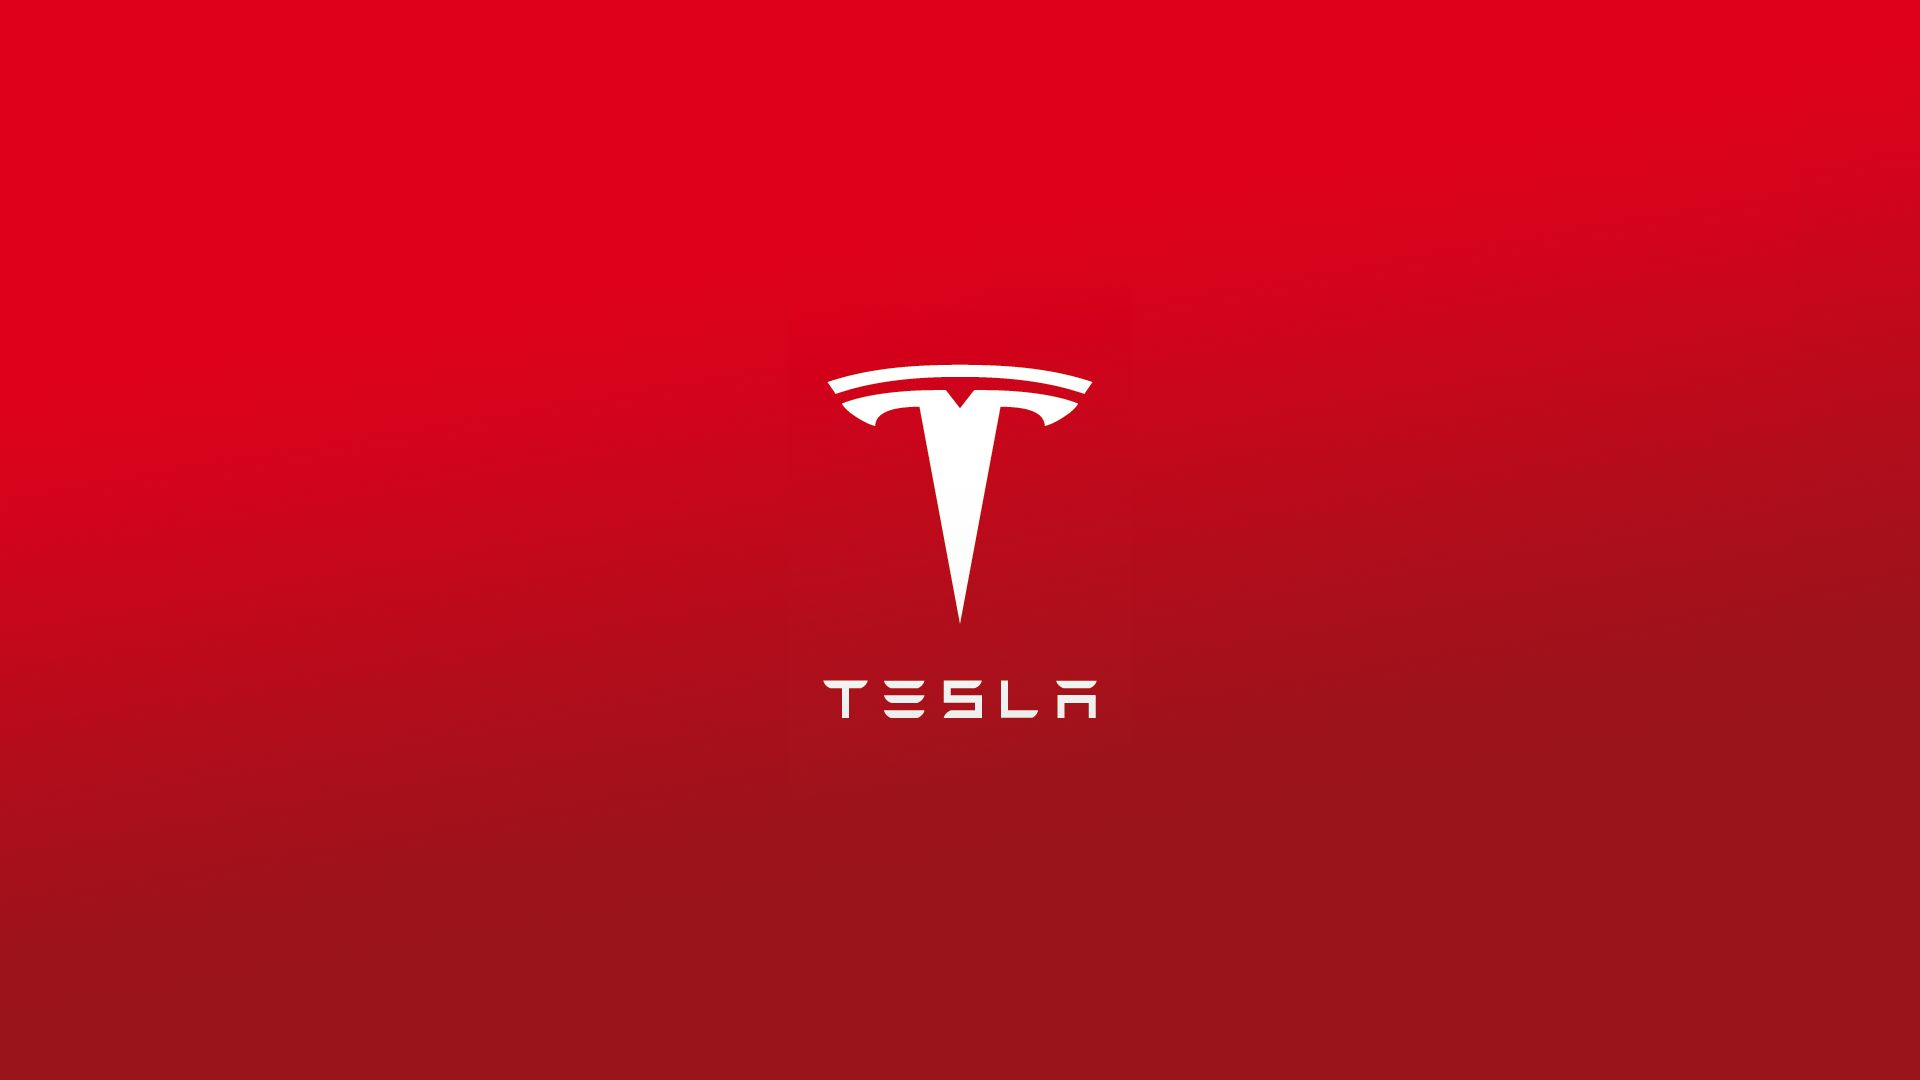 Descargar fondos de escritorio de Tesla HD